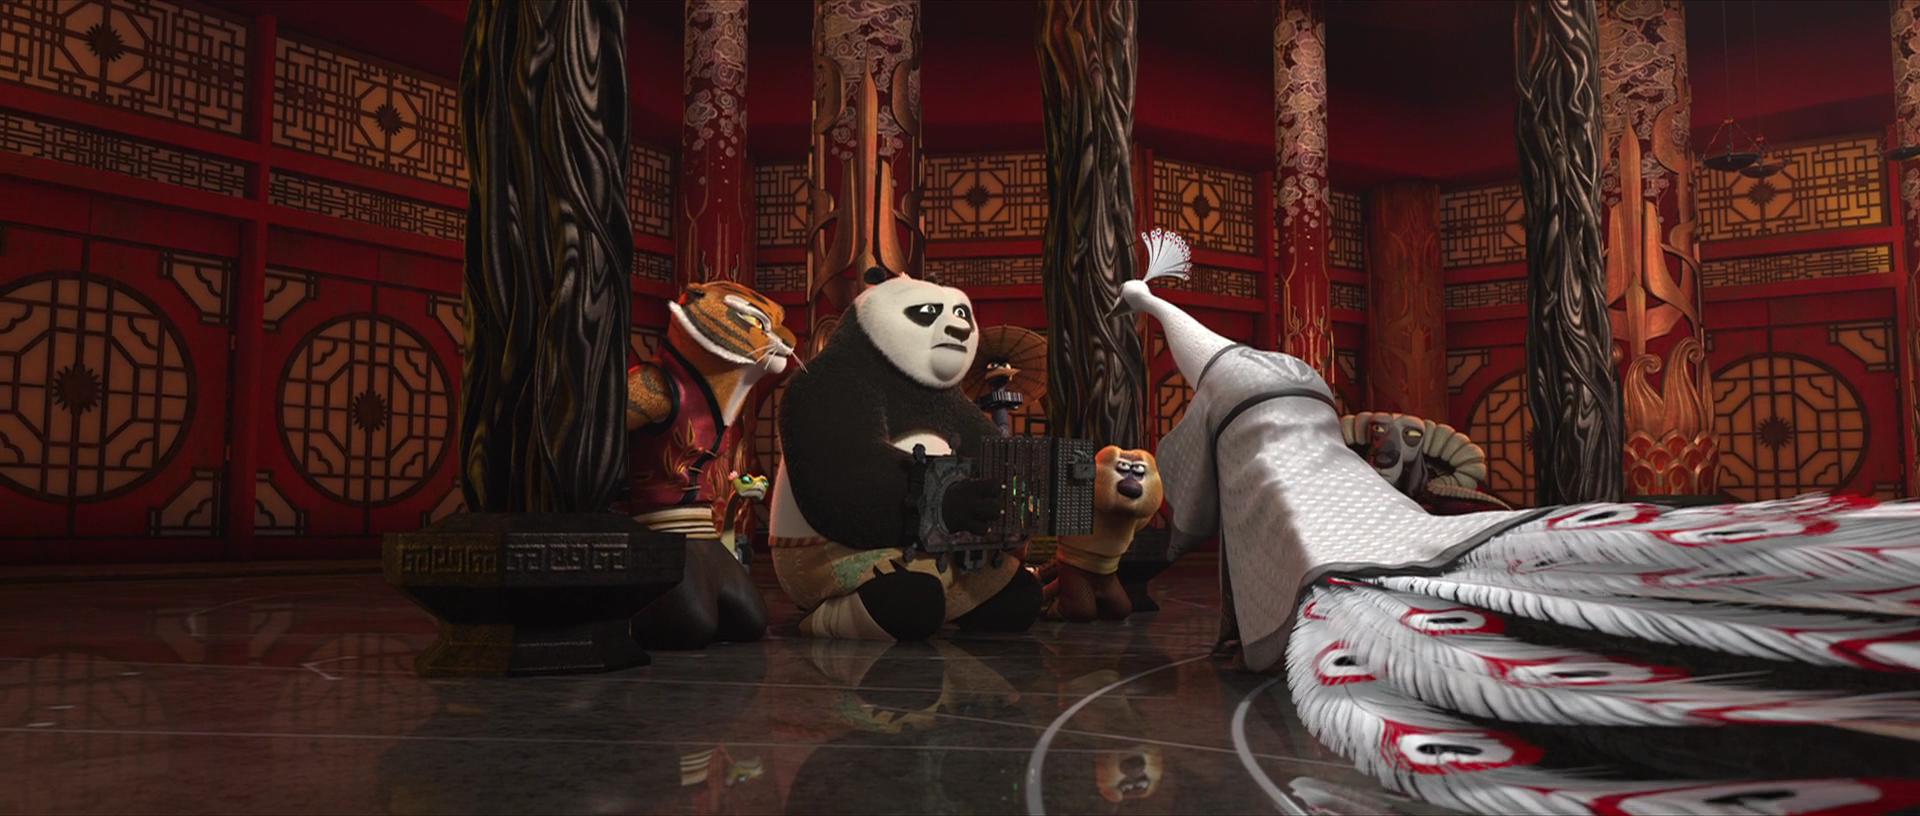 Сколько мультфильмов кунг фу панда